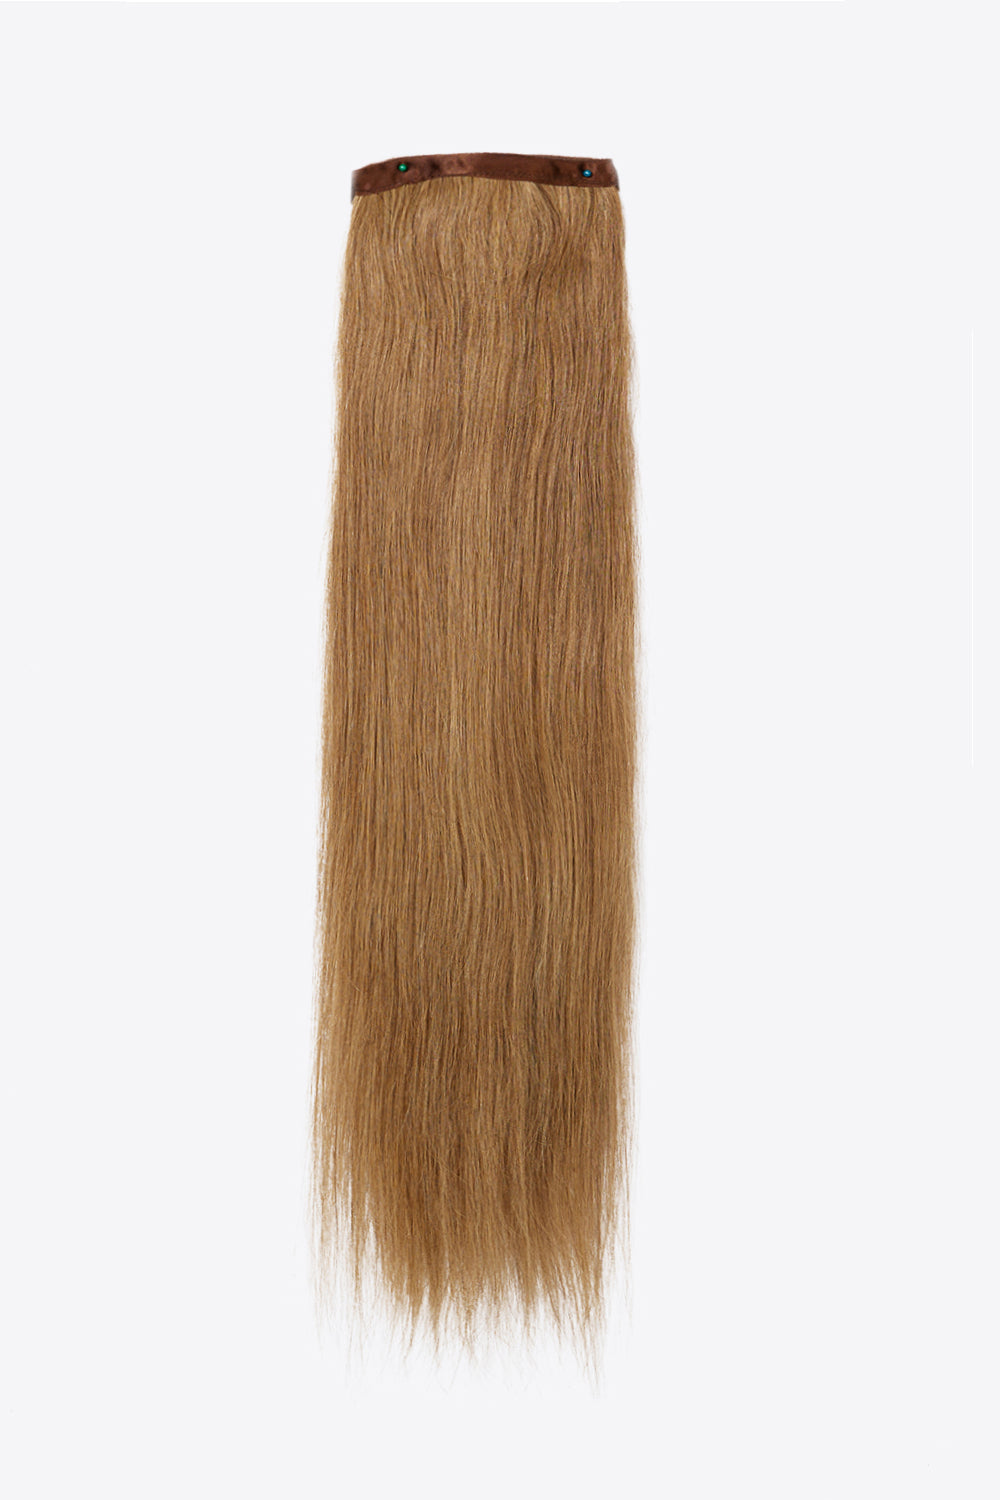 24" 130g Ponytail Long Lasting Human Hair - AllIn Computer